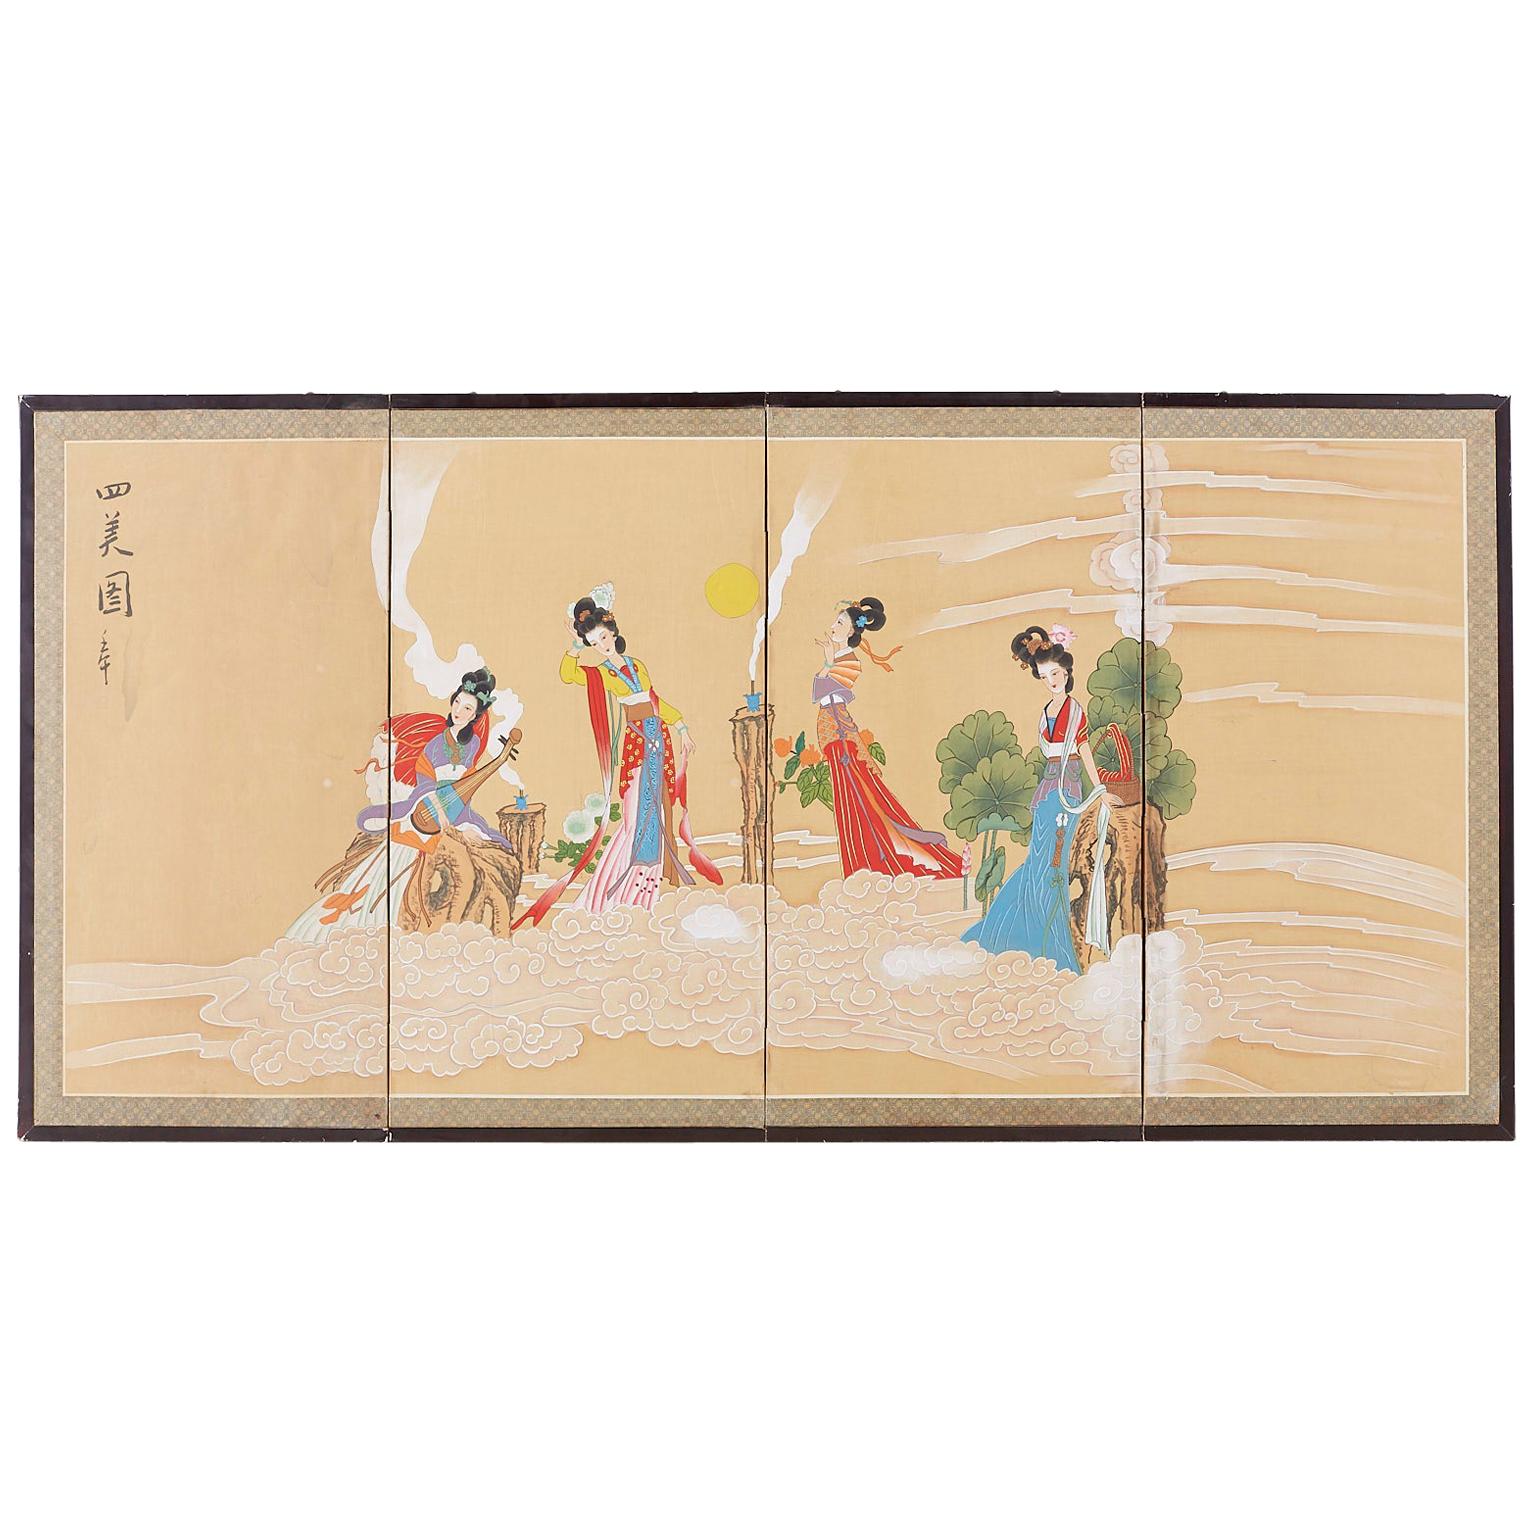 Chinesischer Byobu-Raumteiler im Byobu-Stil mit vier himmlischen Schönheiten